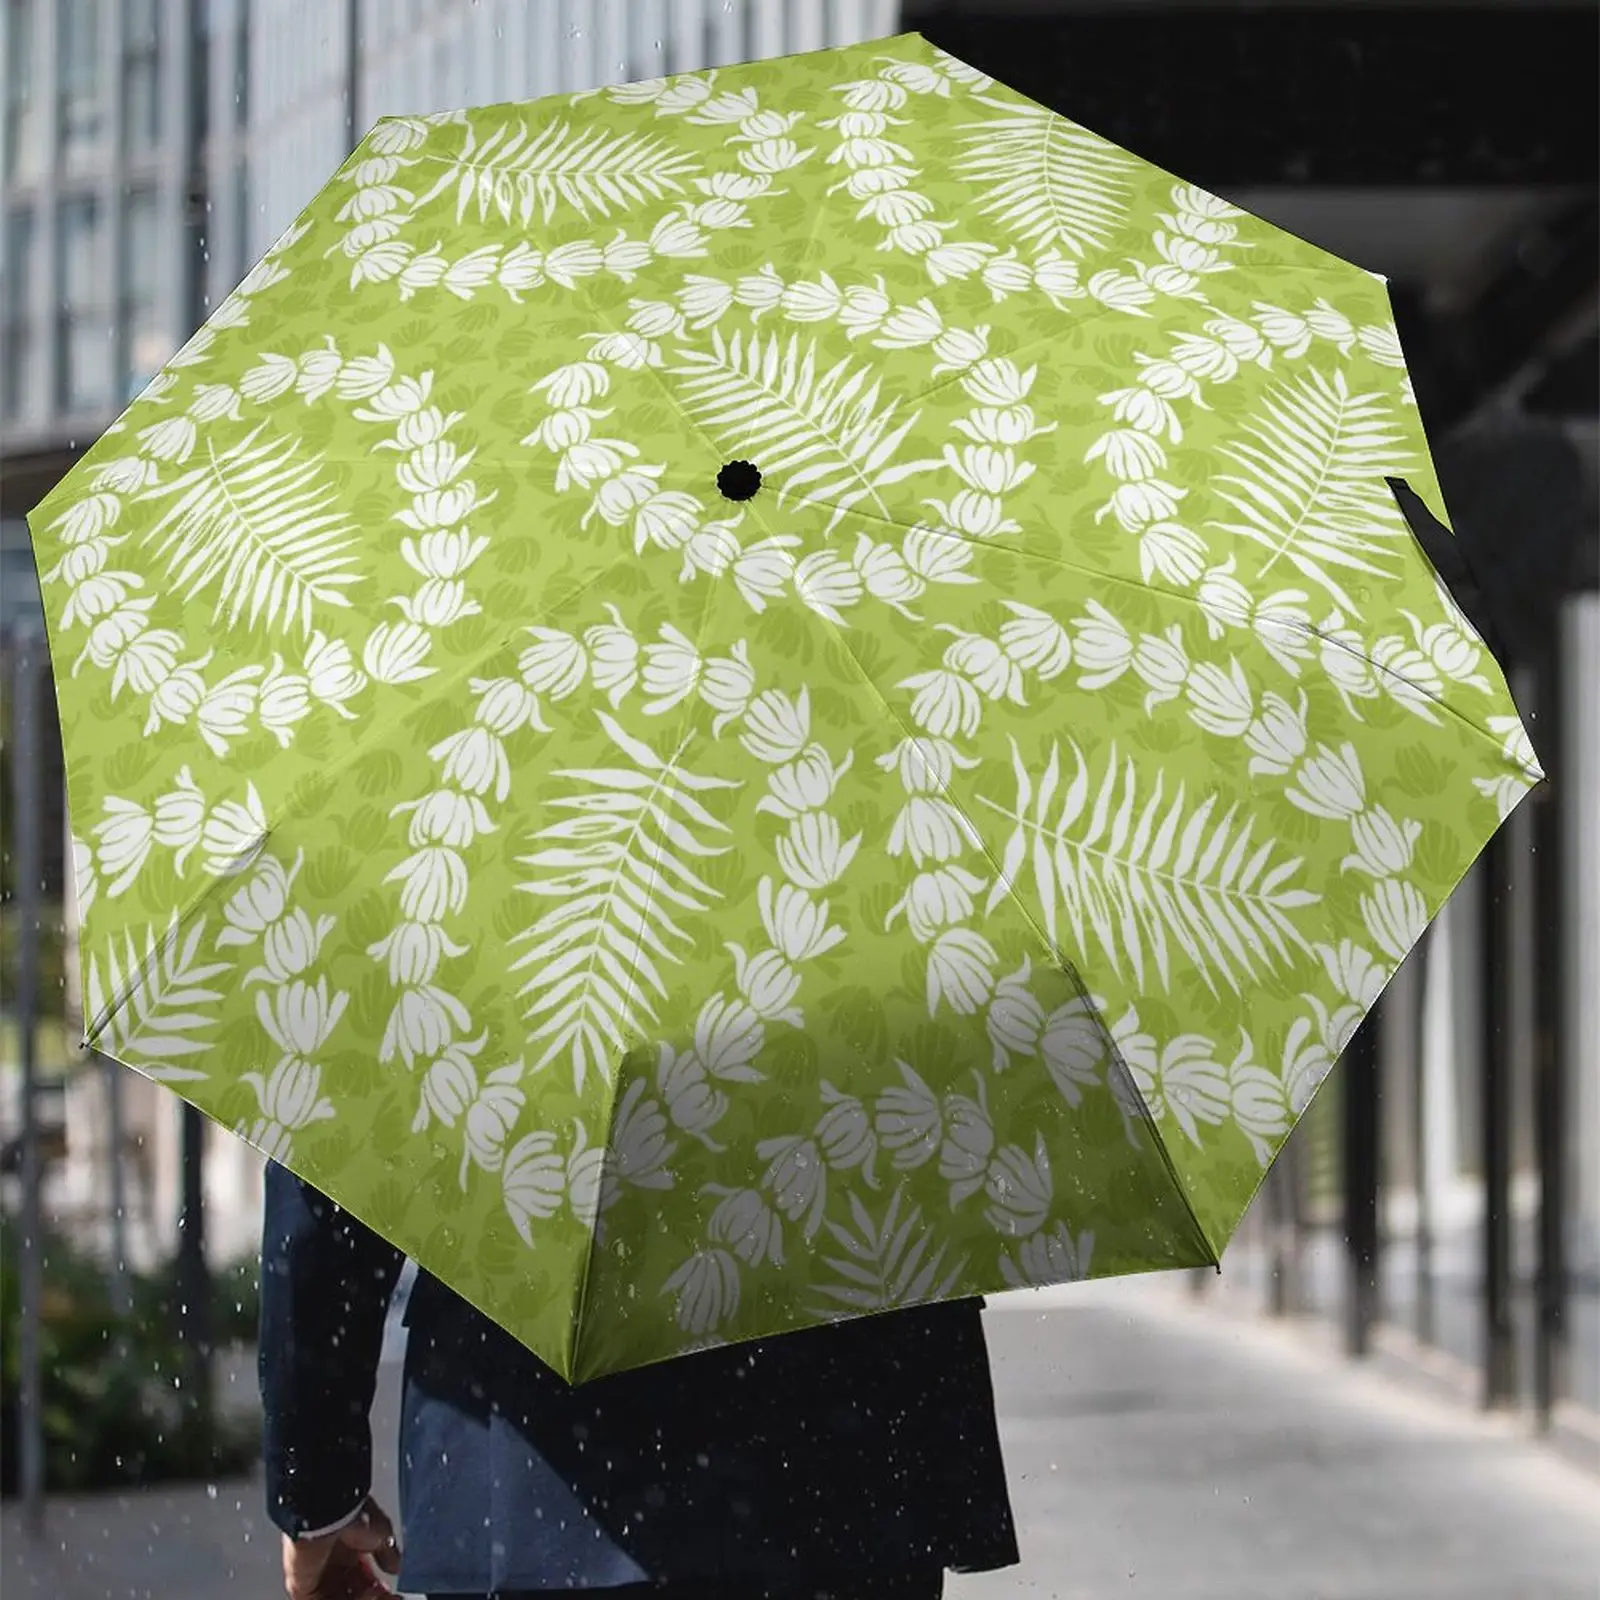 Talep üzerine özel baskı seyahat yağmurlu güneşli 3 katlanır şemsiyeler Logo ile Foldable ke katlanabilir şemsiye